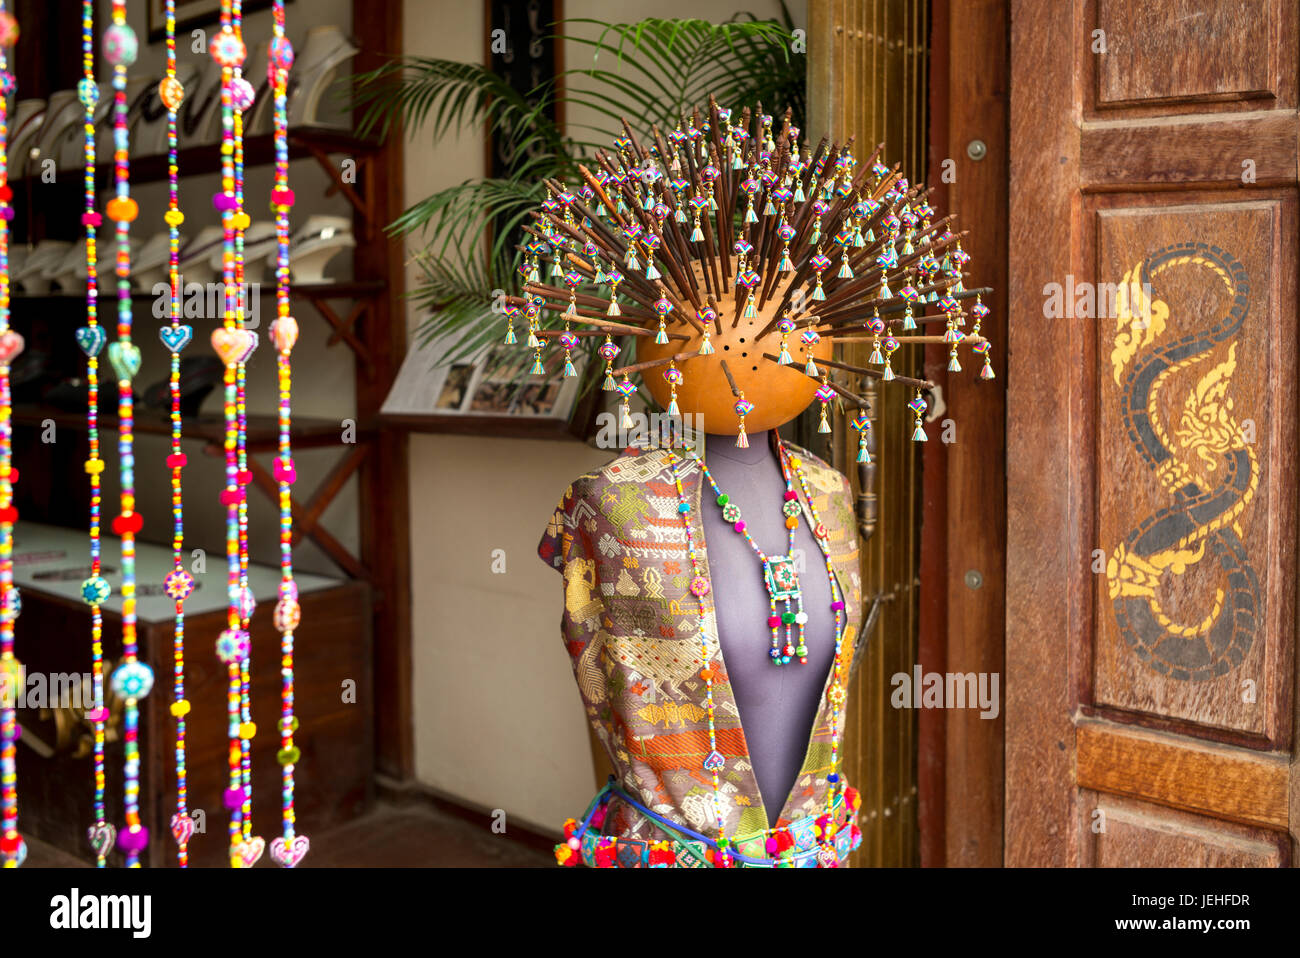 Eine Schaufensterpuppe tragen traditionelle asiatische Kleidung, Glasperlenschmuck und zahlreiche Sticks mit Perlen ragte aus dem Kopf auf dem display Stockfoto